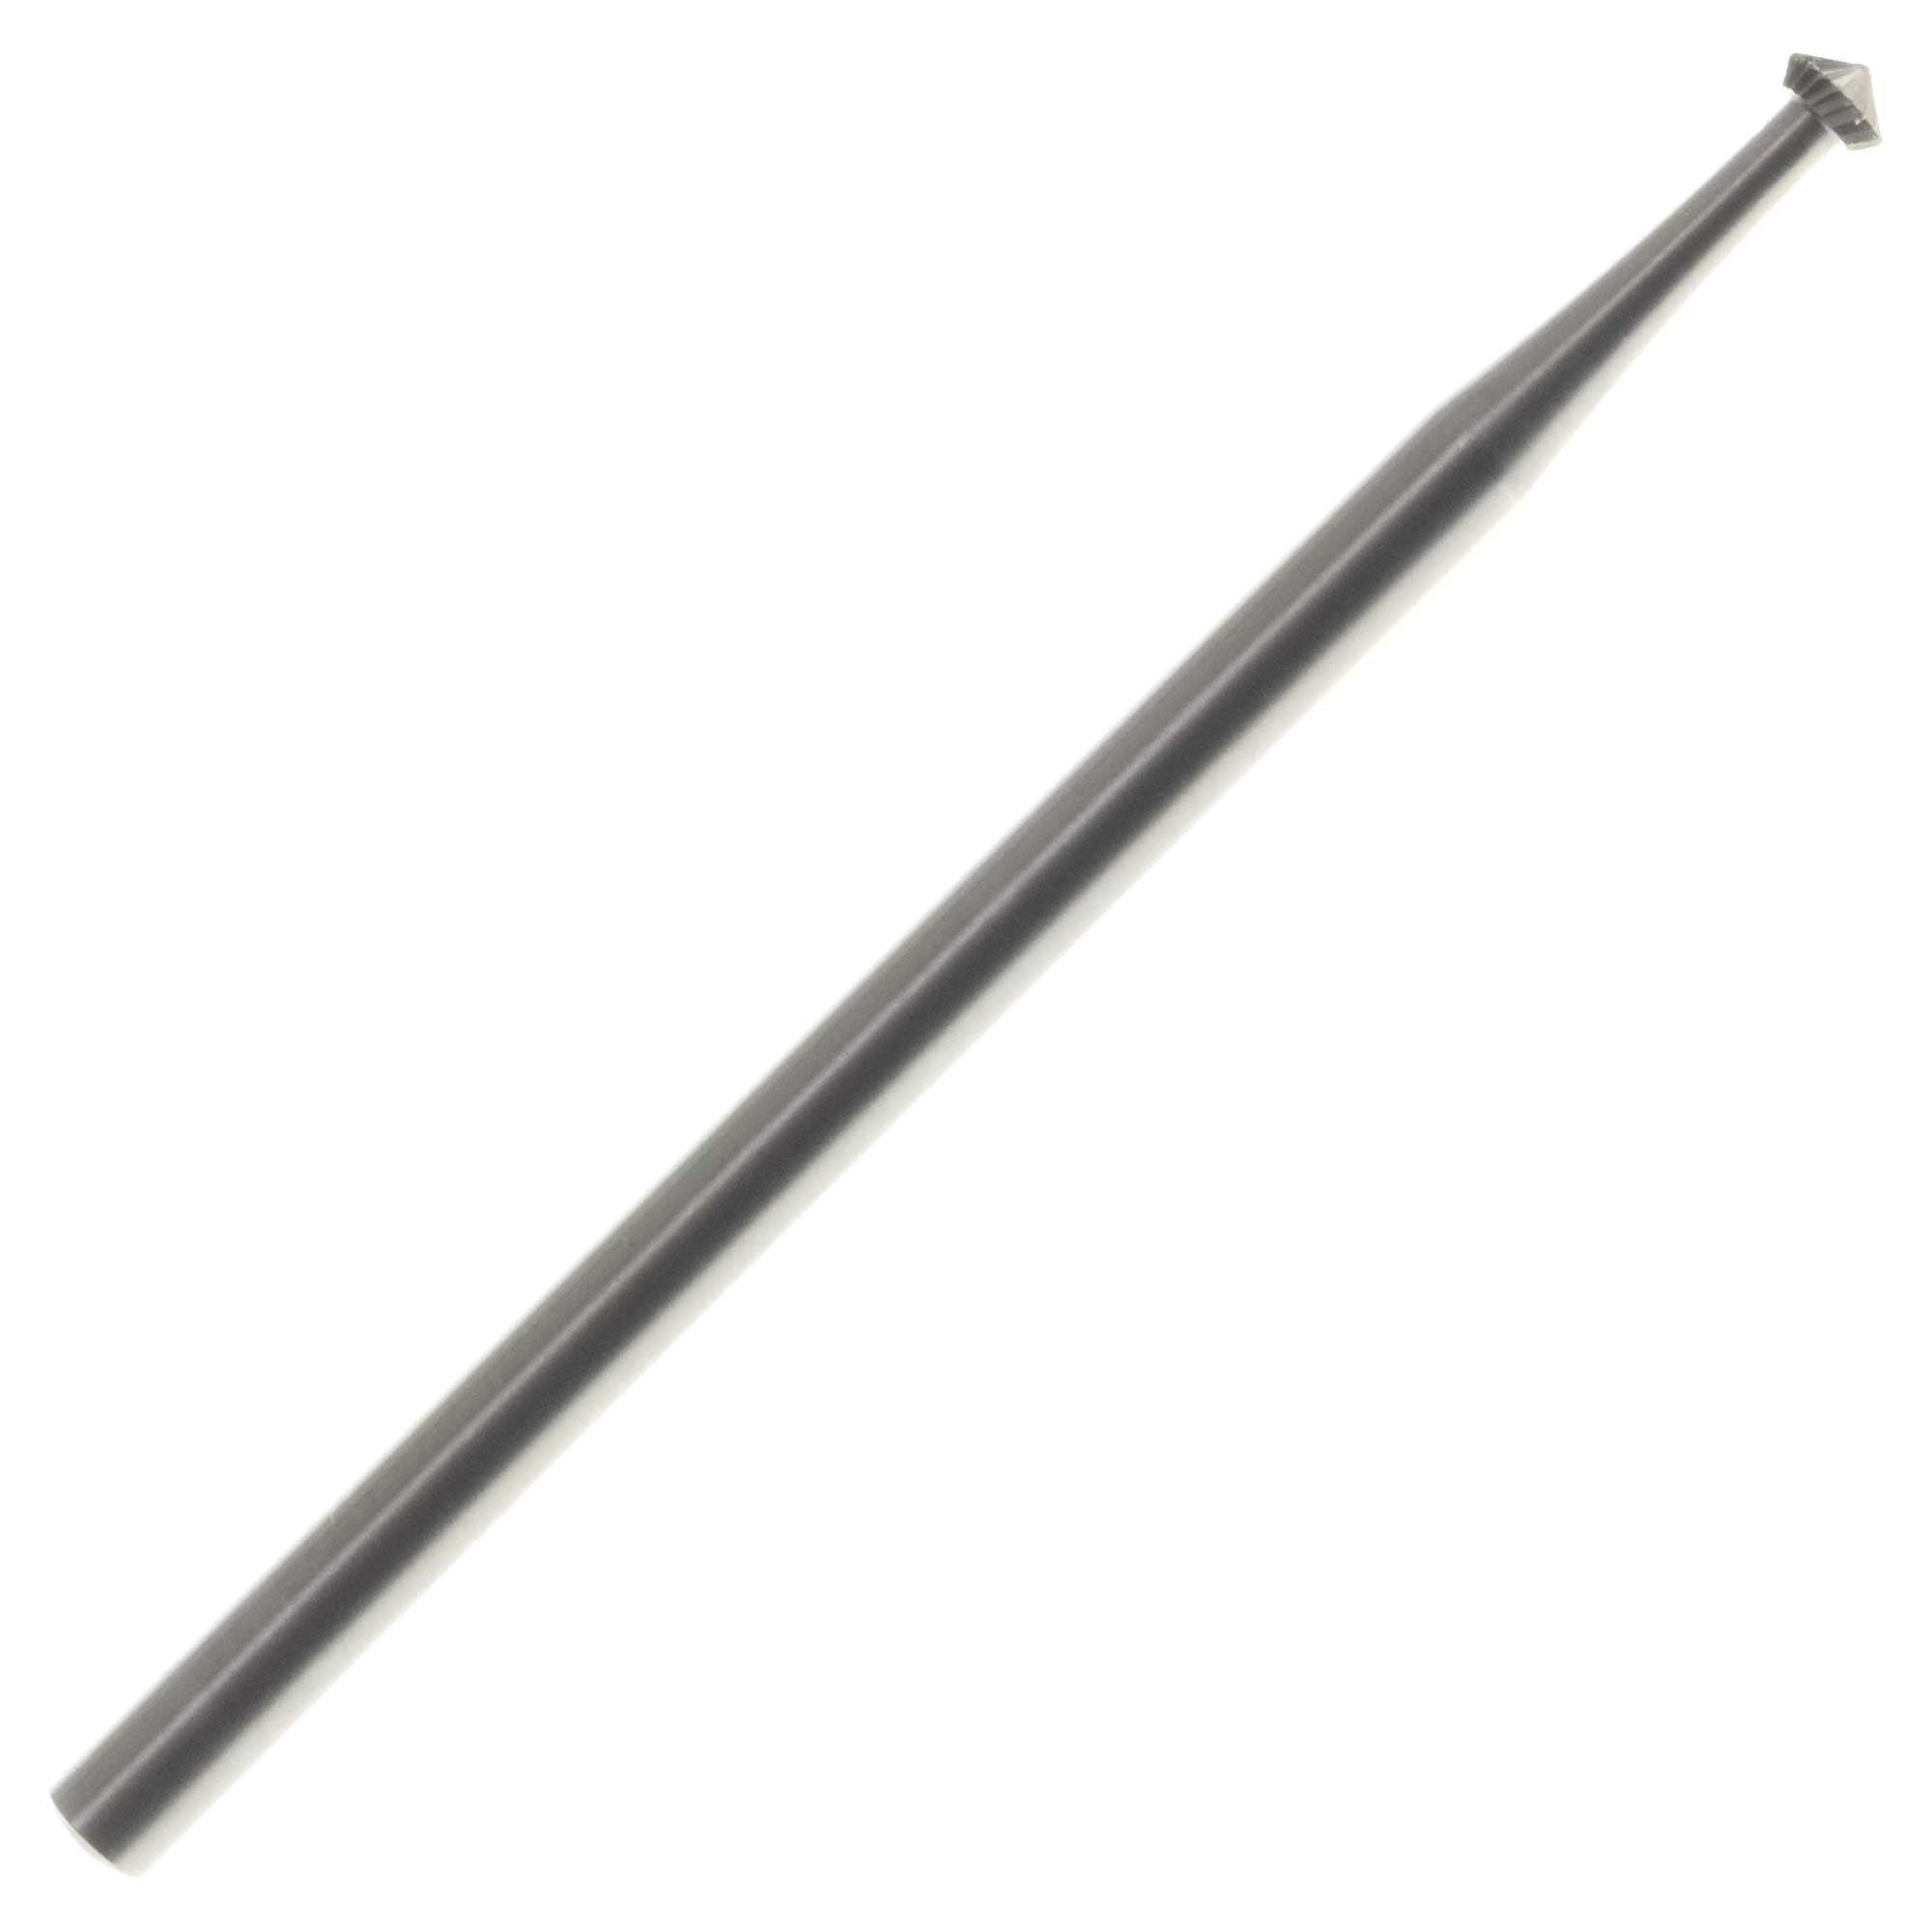 04.2mm Steel 90 degree Hart Bur - Germany - 3/32 inch shank